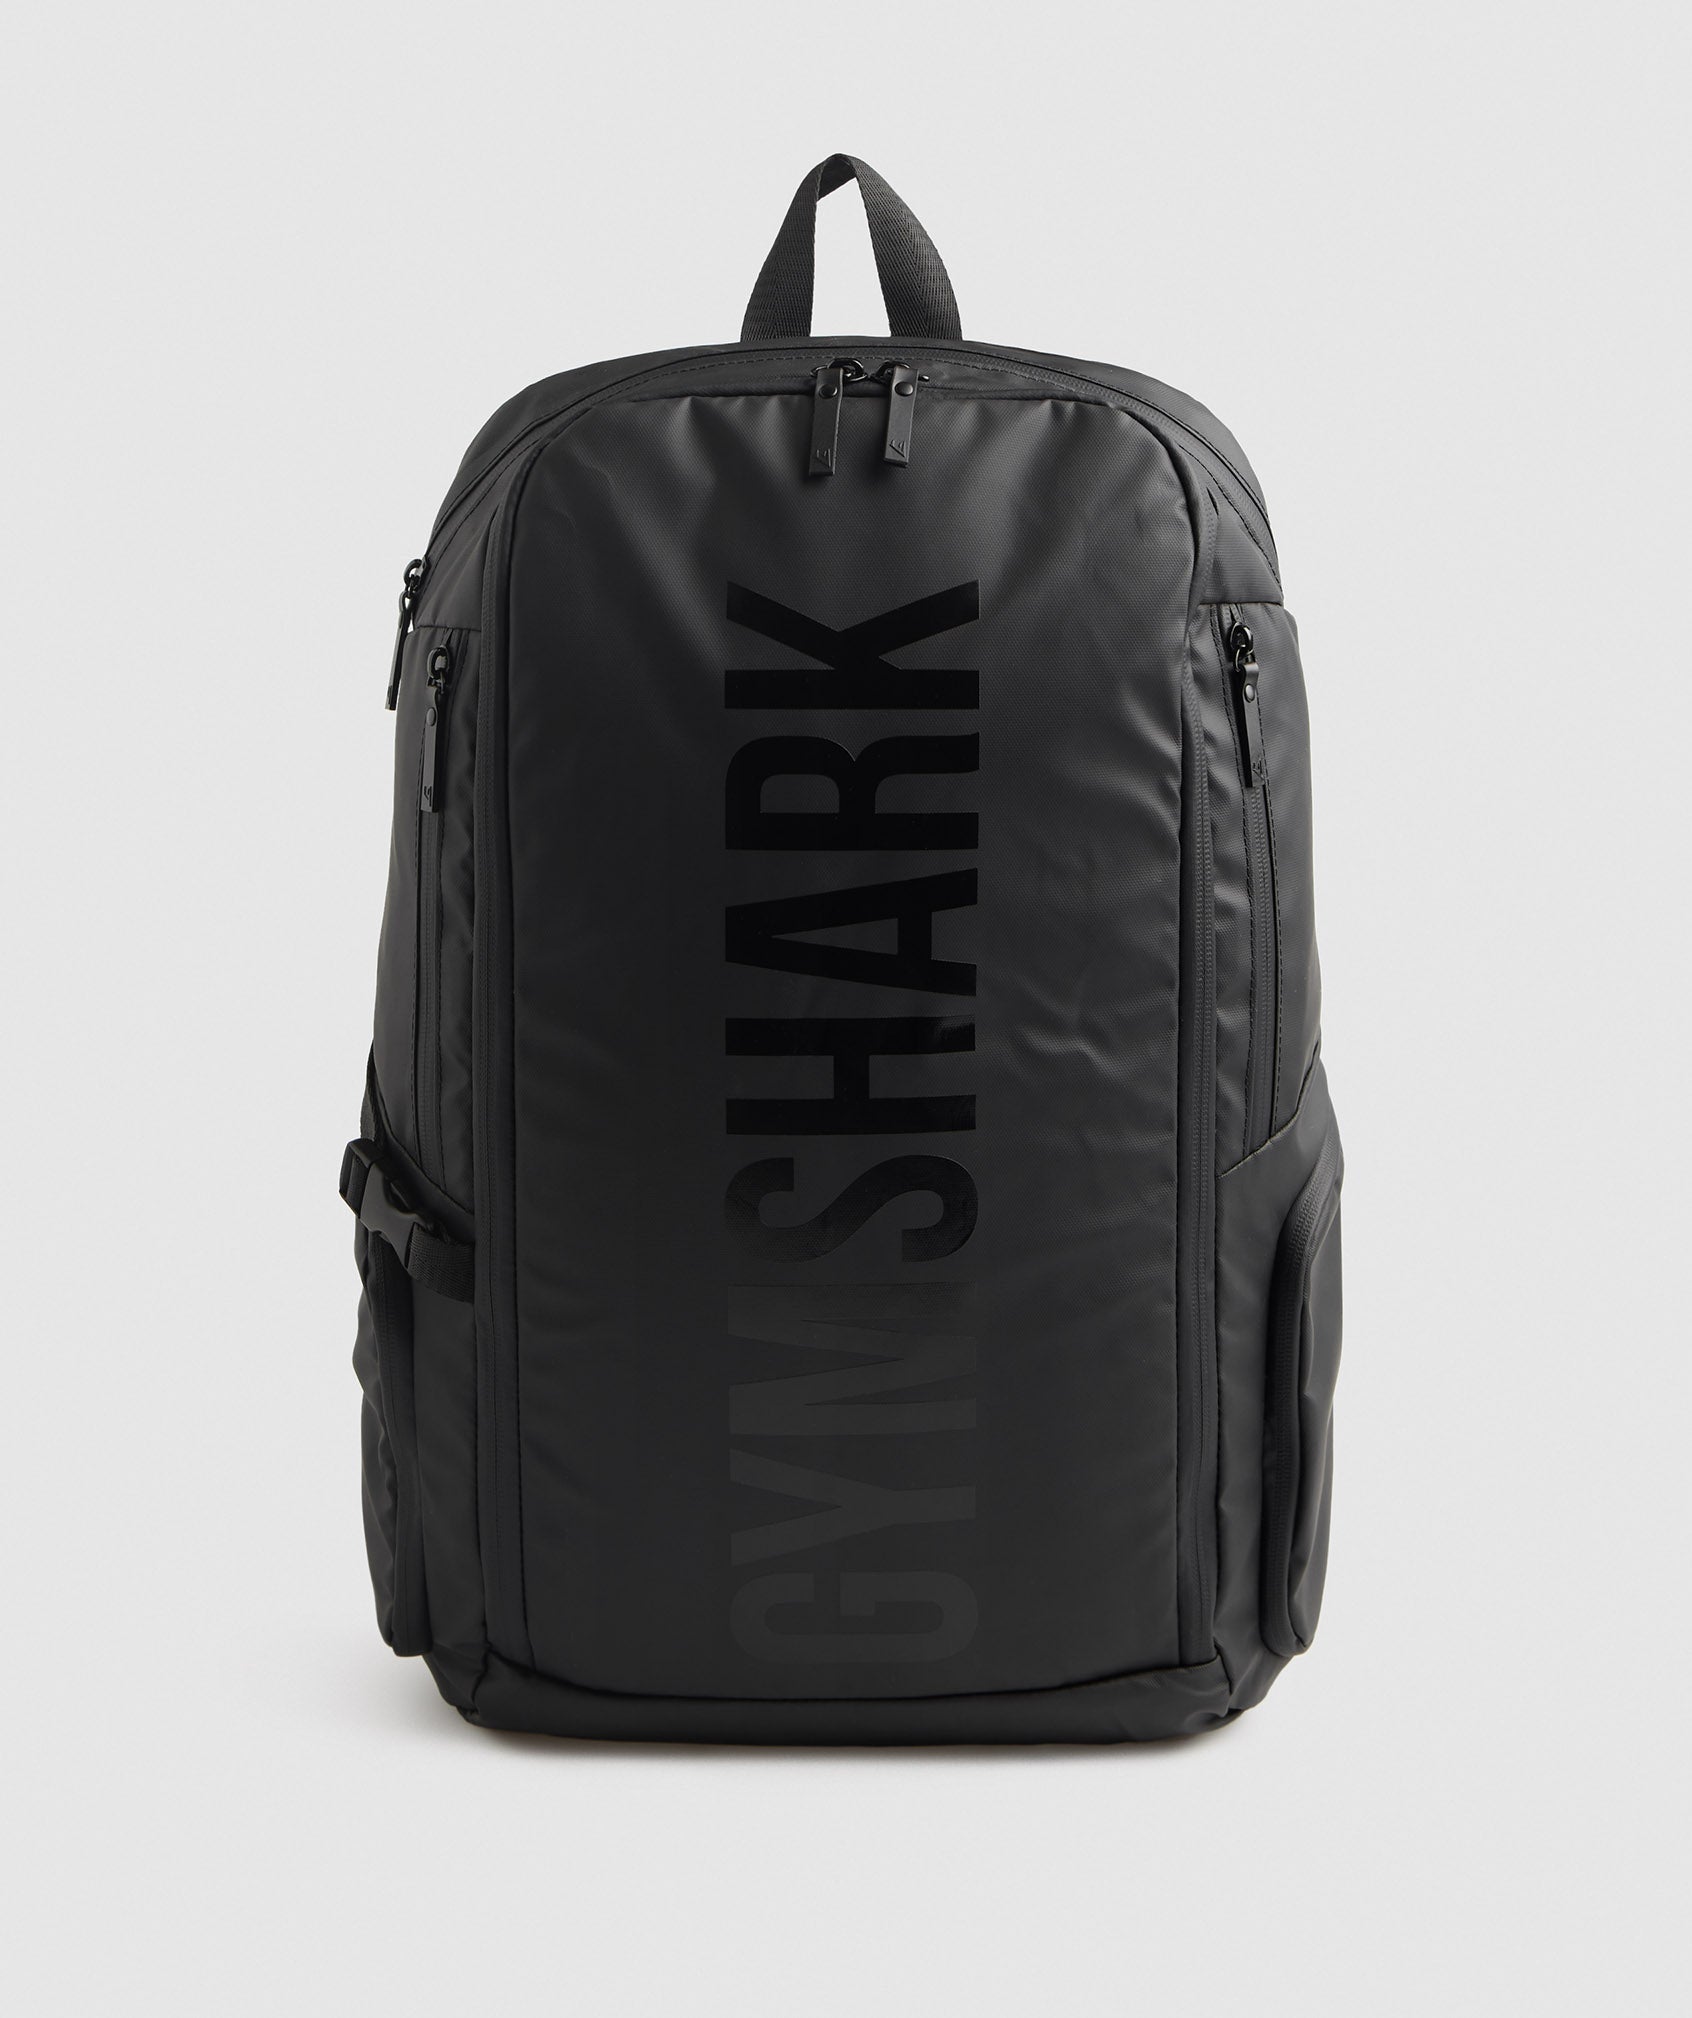 X-Series 0.3 Backpack in Black